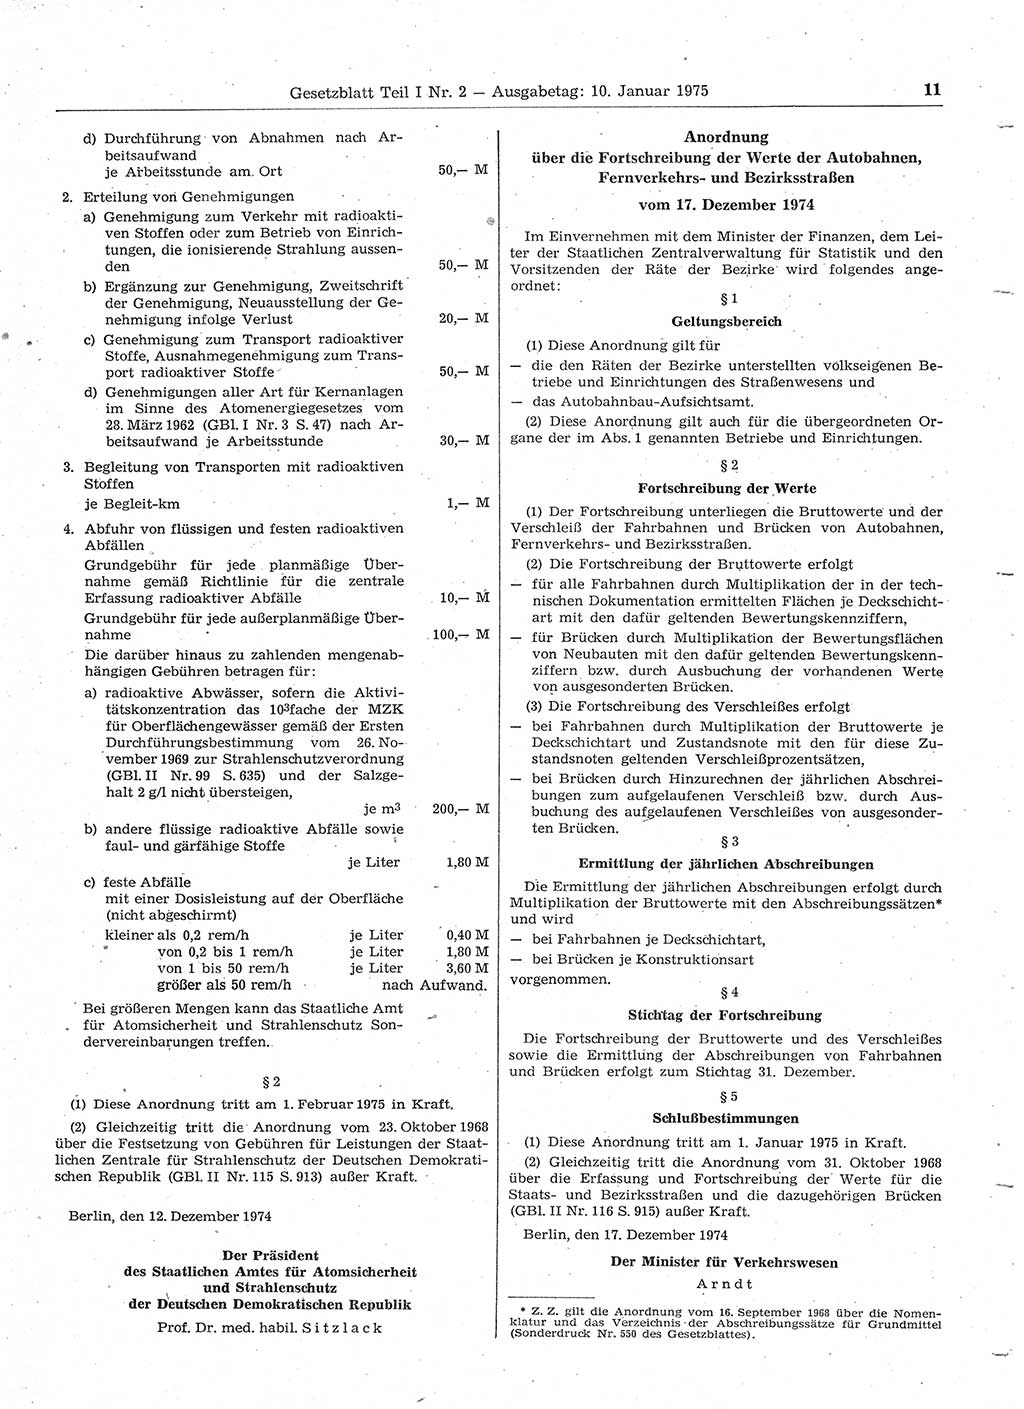 Gesetzblatt (GBl.) der Deutschen Demokratischen Republik (DDR) Teil Ⅰ 1975, Seite 11 (GBl. DDR Ⅰ 1975, S. 11)